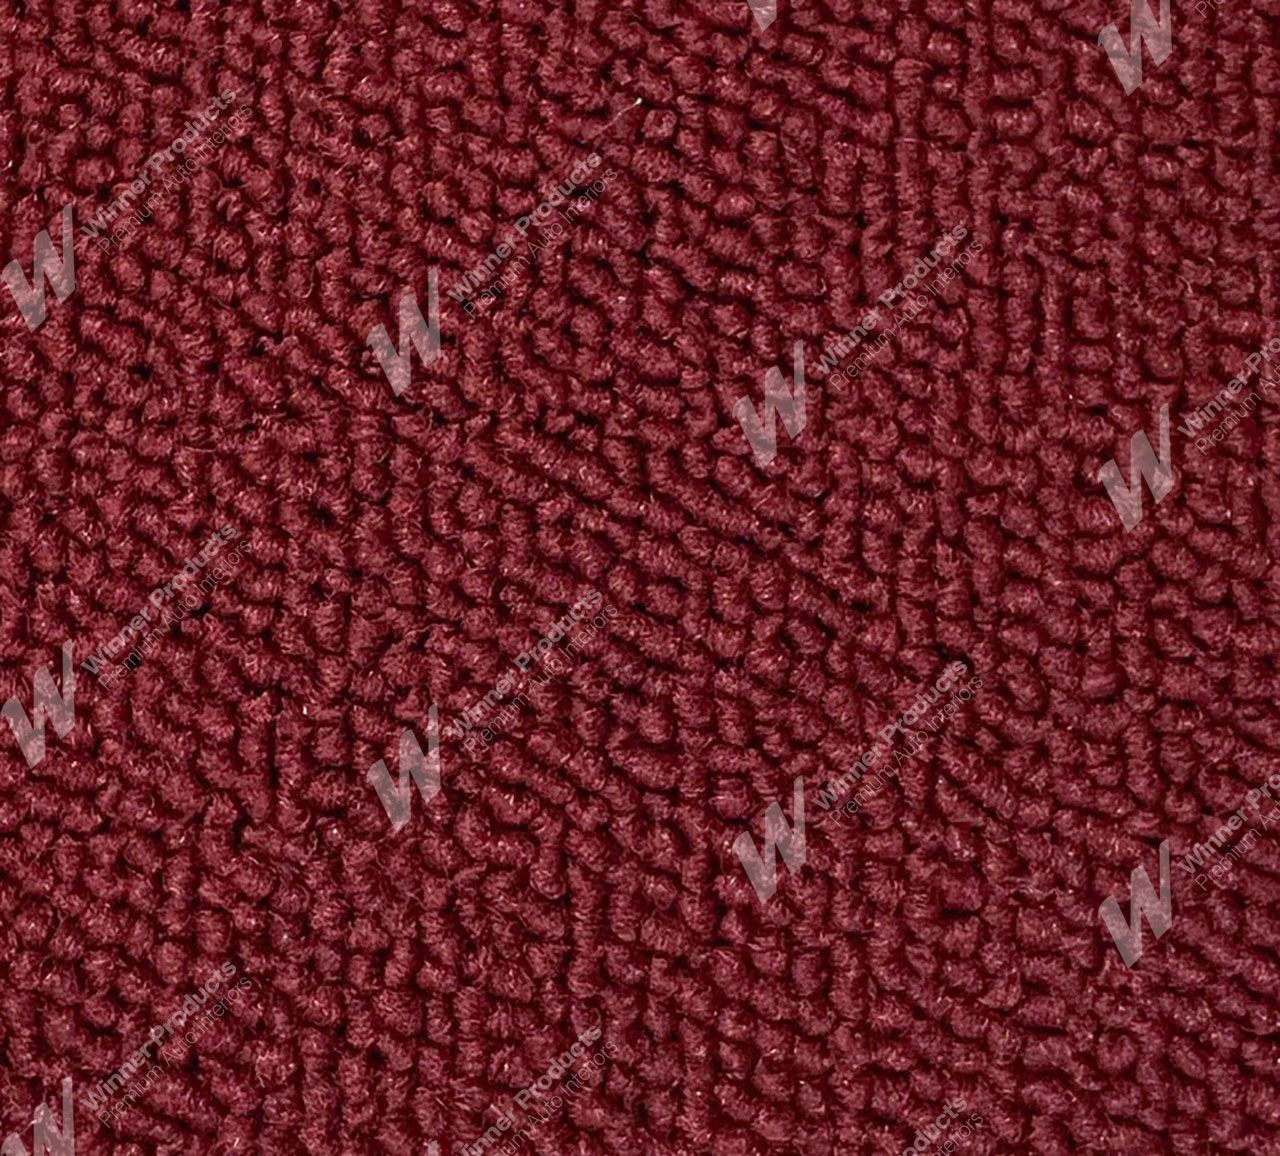 Holden Premier HT Premier Sedan 12T Morocco Red & Castillion Weave Carpet (Image 1 of 1)